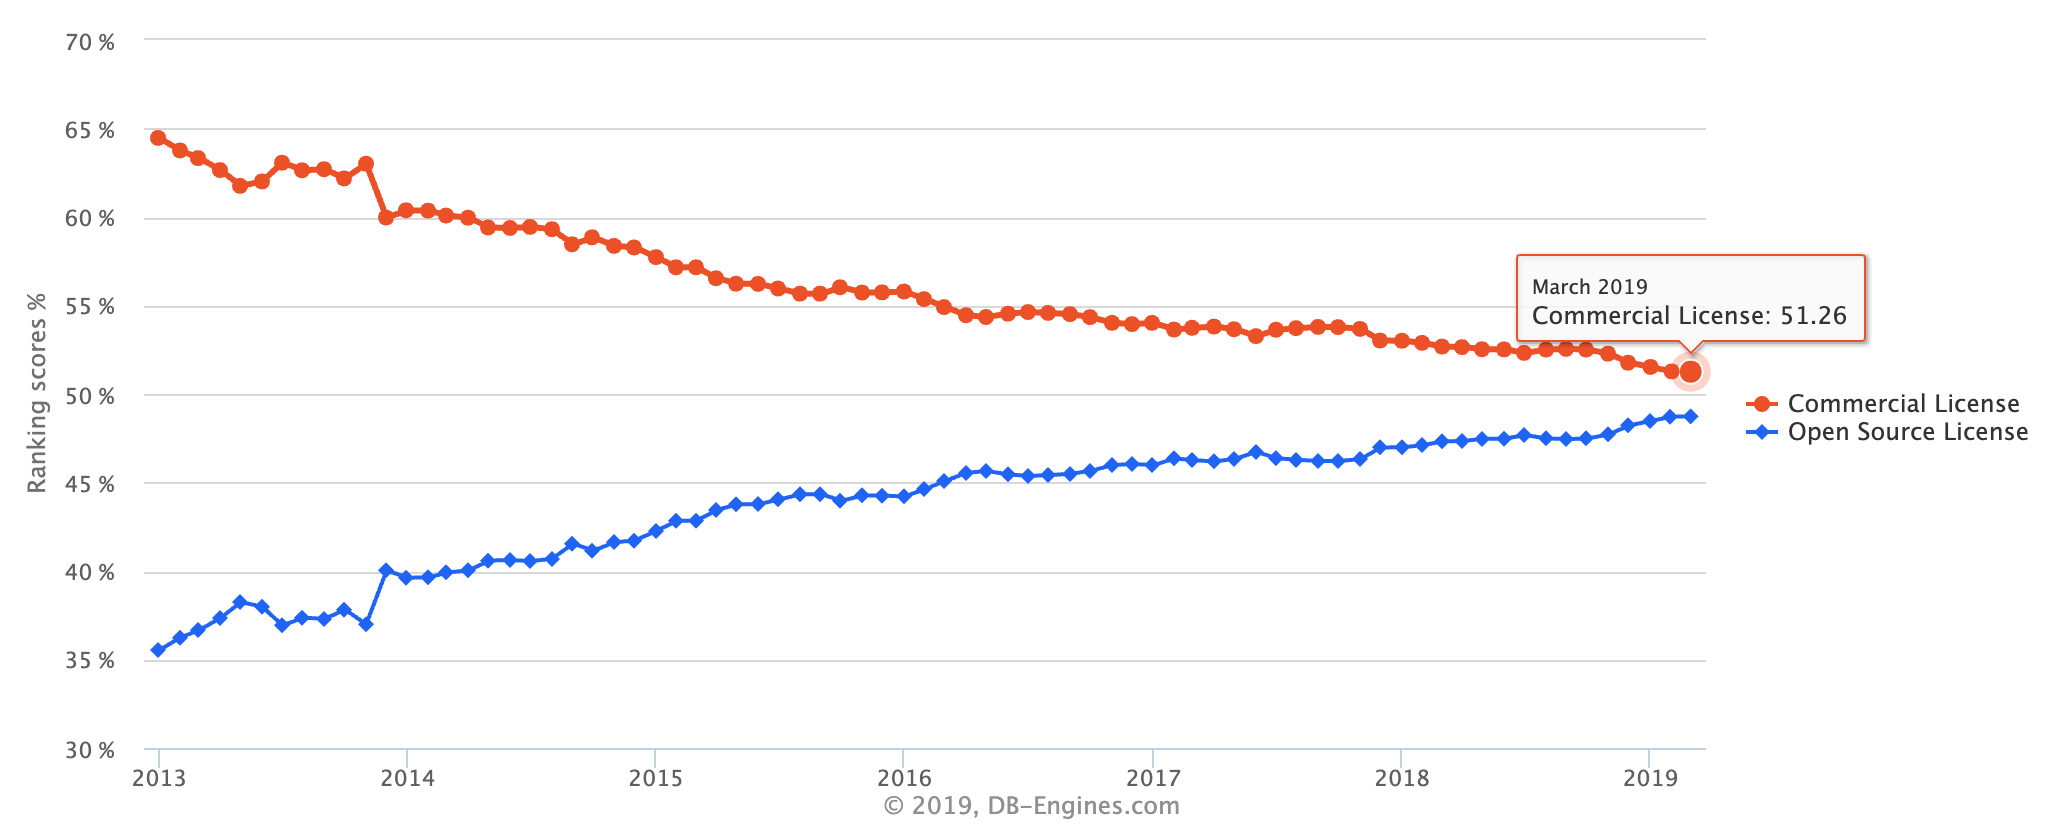 PostgreSQL Trends Report - Open Source vs. Commercial License